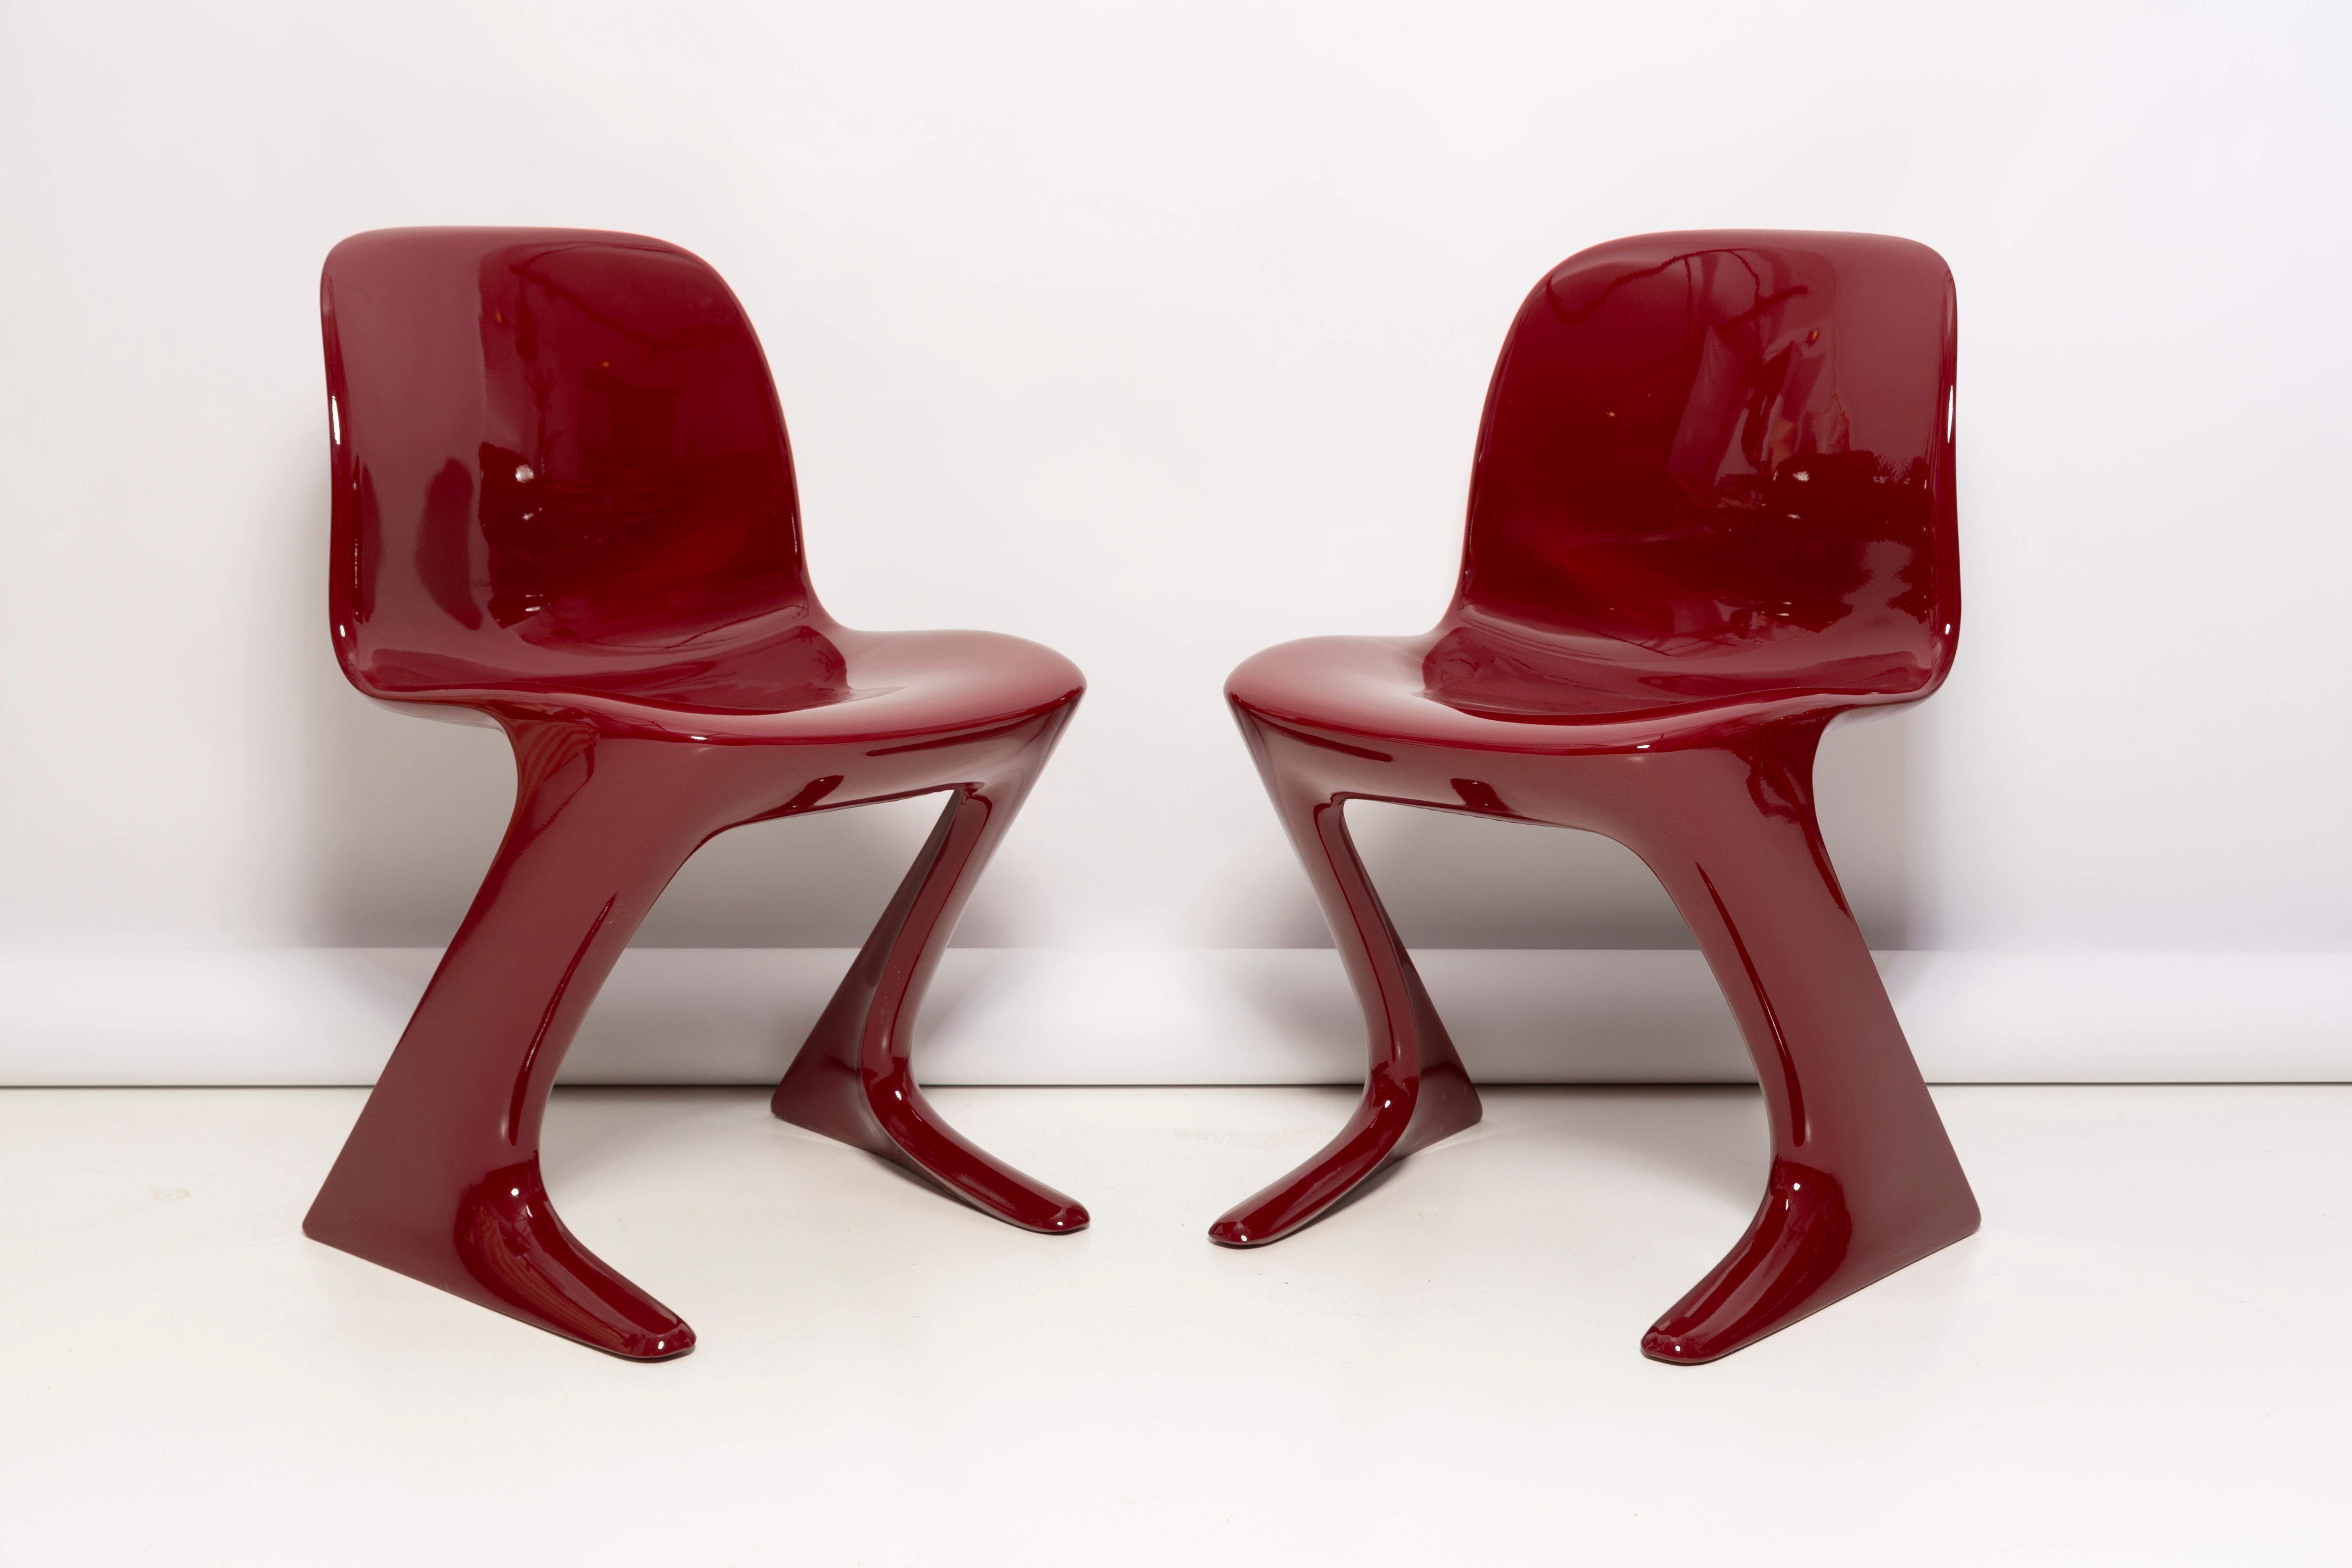 Dieses Modell wird als Z-Stuhl bezeichnet. 1968 in der DDR von Ernst Moeckl und Siegfried Mehl entworfen, deutsche Version des Panton-Stuhls. Auch Känguru-Stuhl oder Variopur-Stuhl genannt. Produziert in Ostdeutschland.

Stuhl ist nach vollständiger